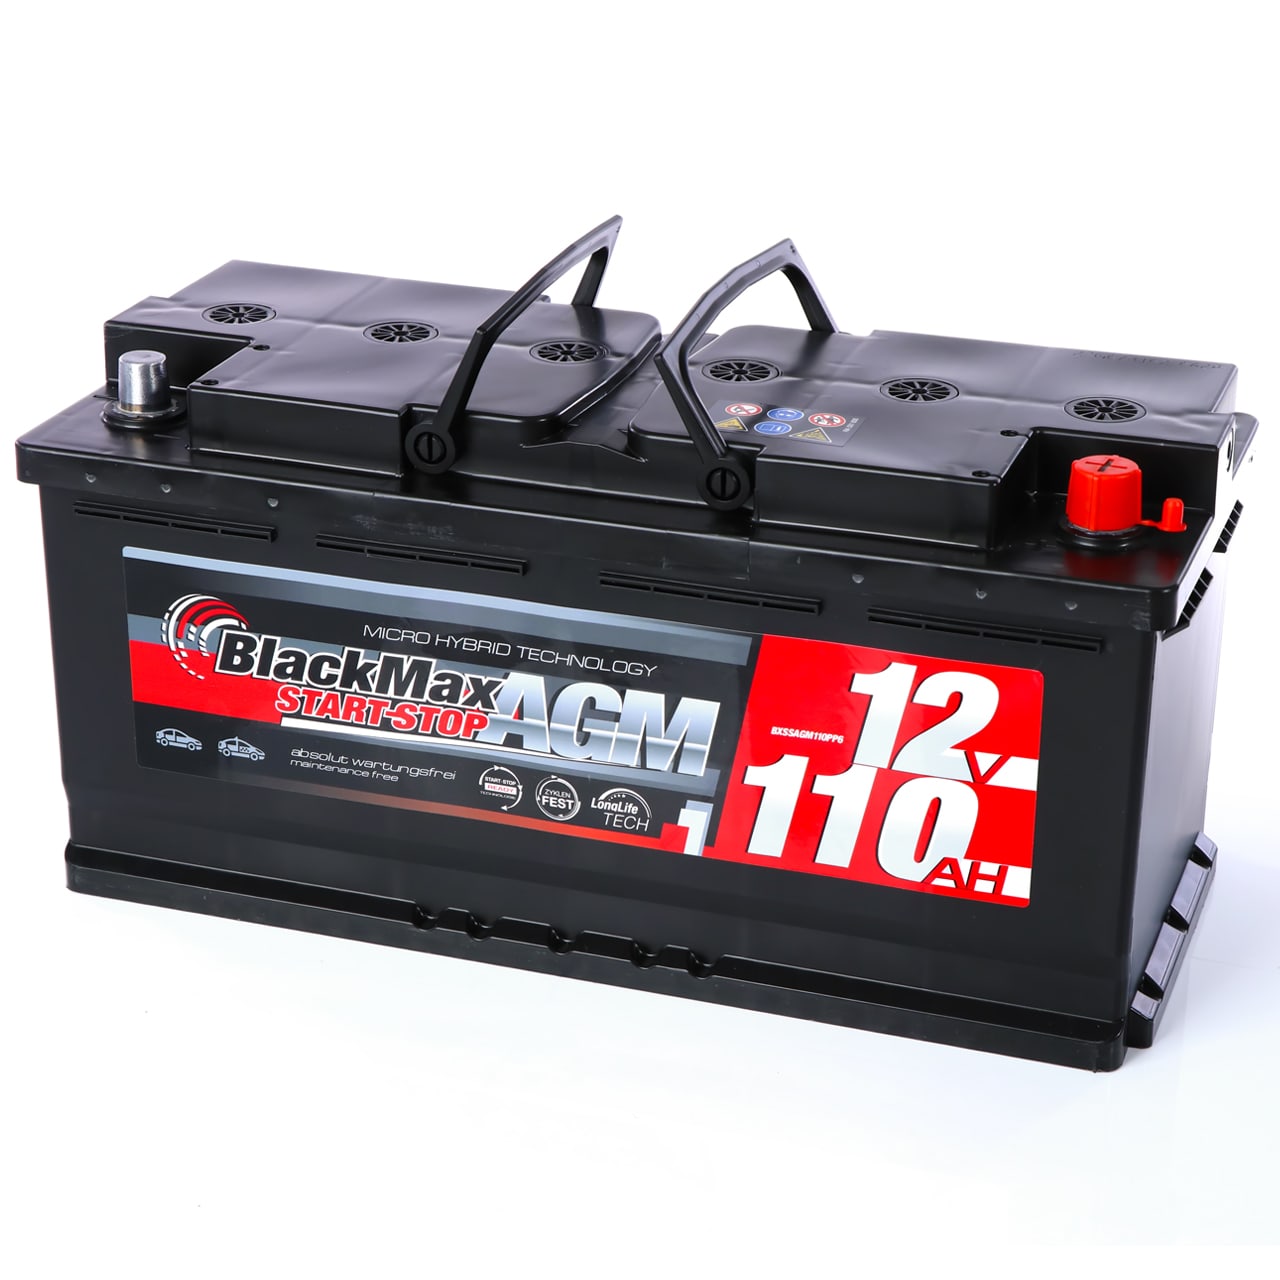 Autobatterie AGM 12V 110Ah BlackMax automotive für Start-Stop 105Ah